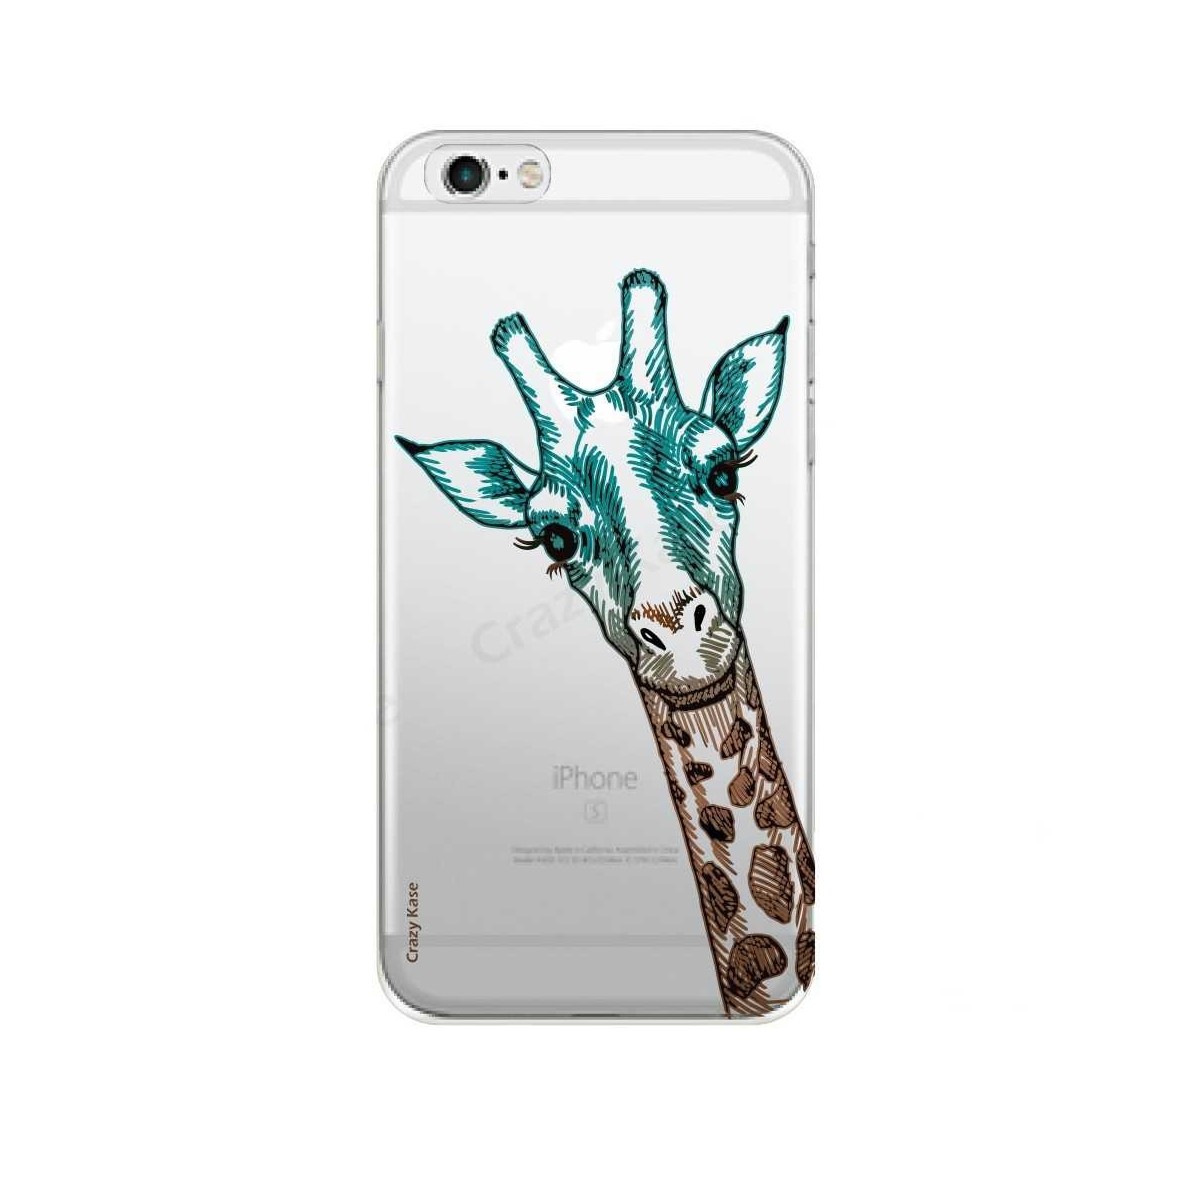 Coque iPhone 6 Plus / 6s Plus Transparente souple motif Tête de Girafe - Crazy Kase